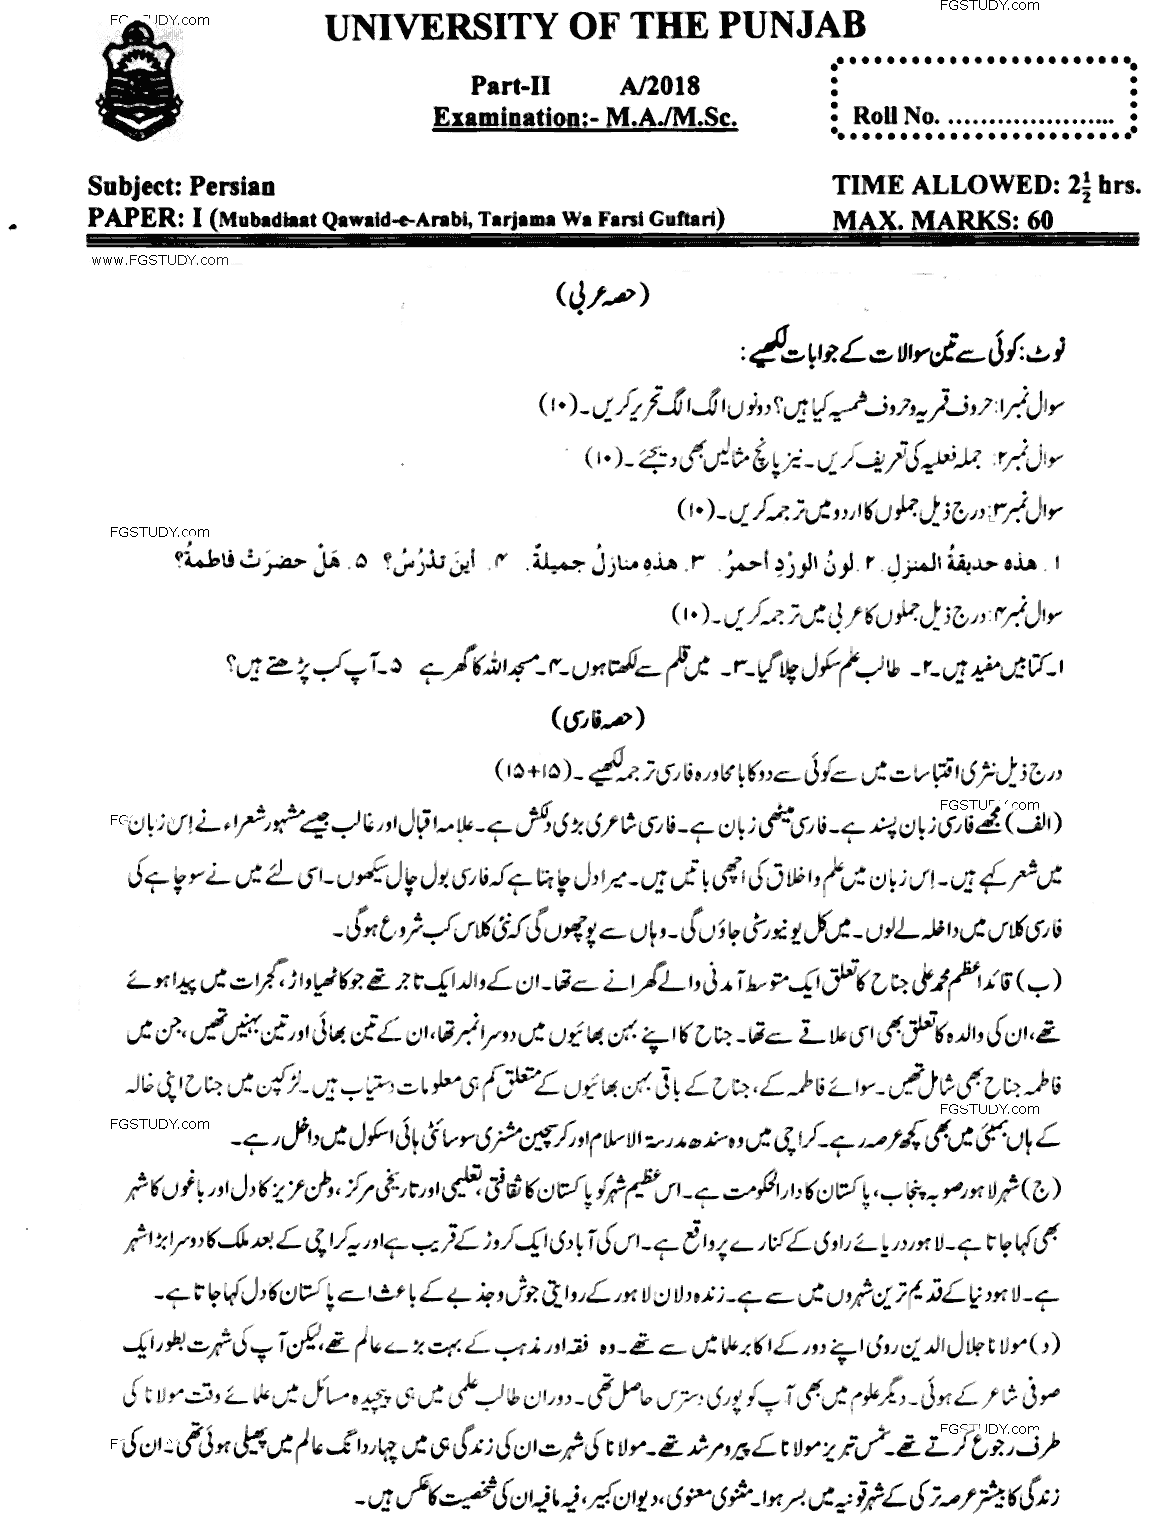 MA Part 2 Persian Mubadiaat E Qawaid E Arabi Tarjama Wa Farsi Guftari Past Paper 2018 Punjab University